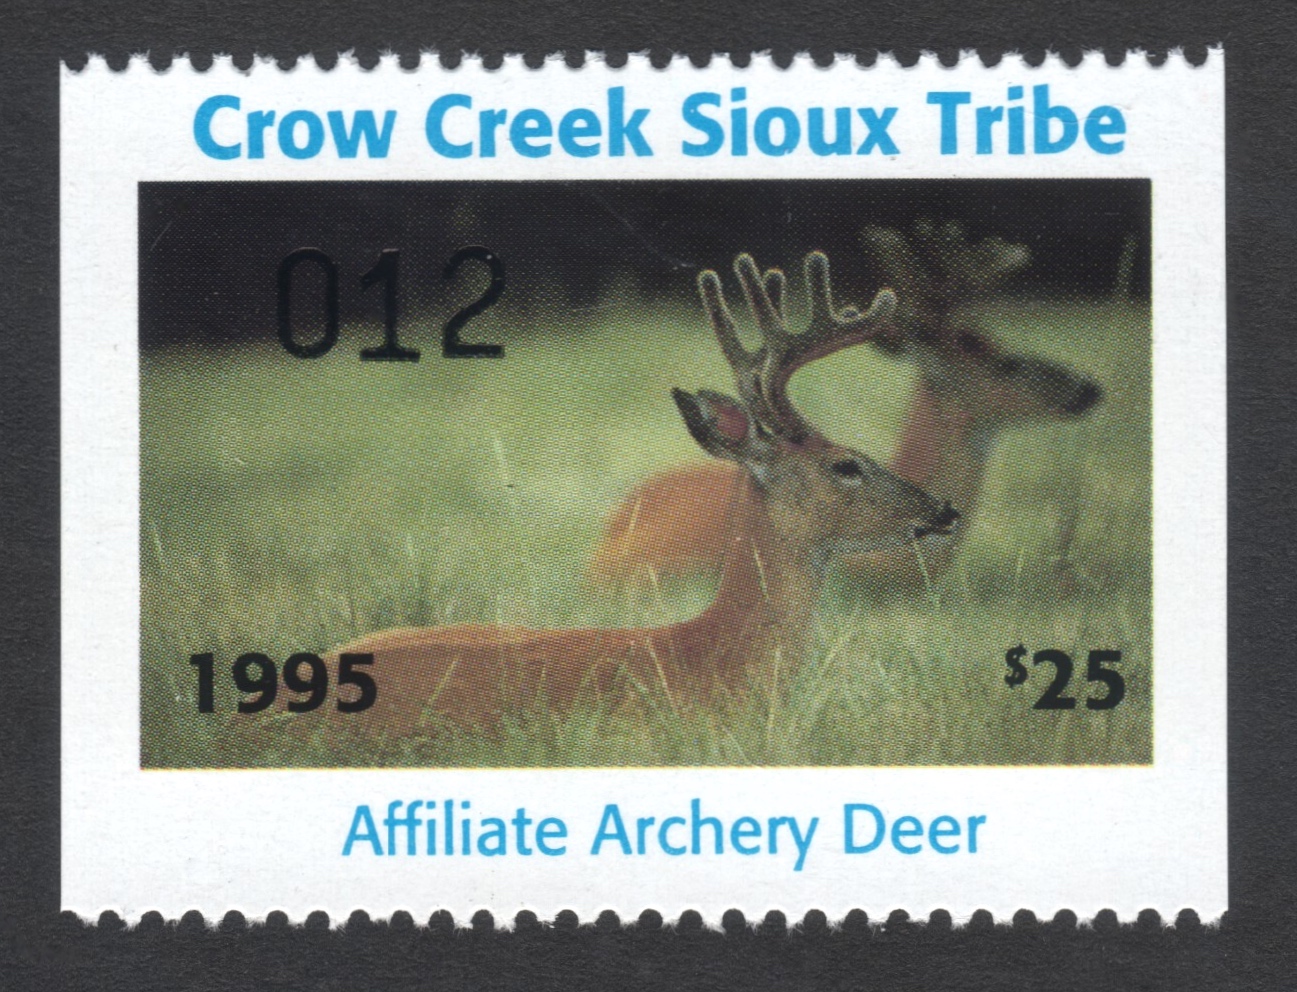 1995 Crow Creek Affiliate Archery Deer